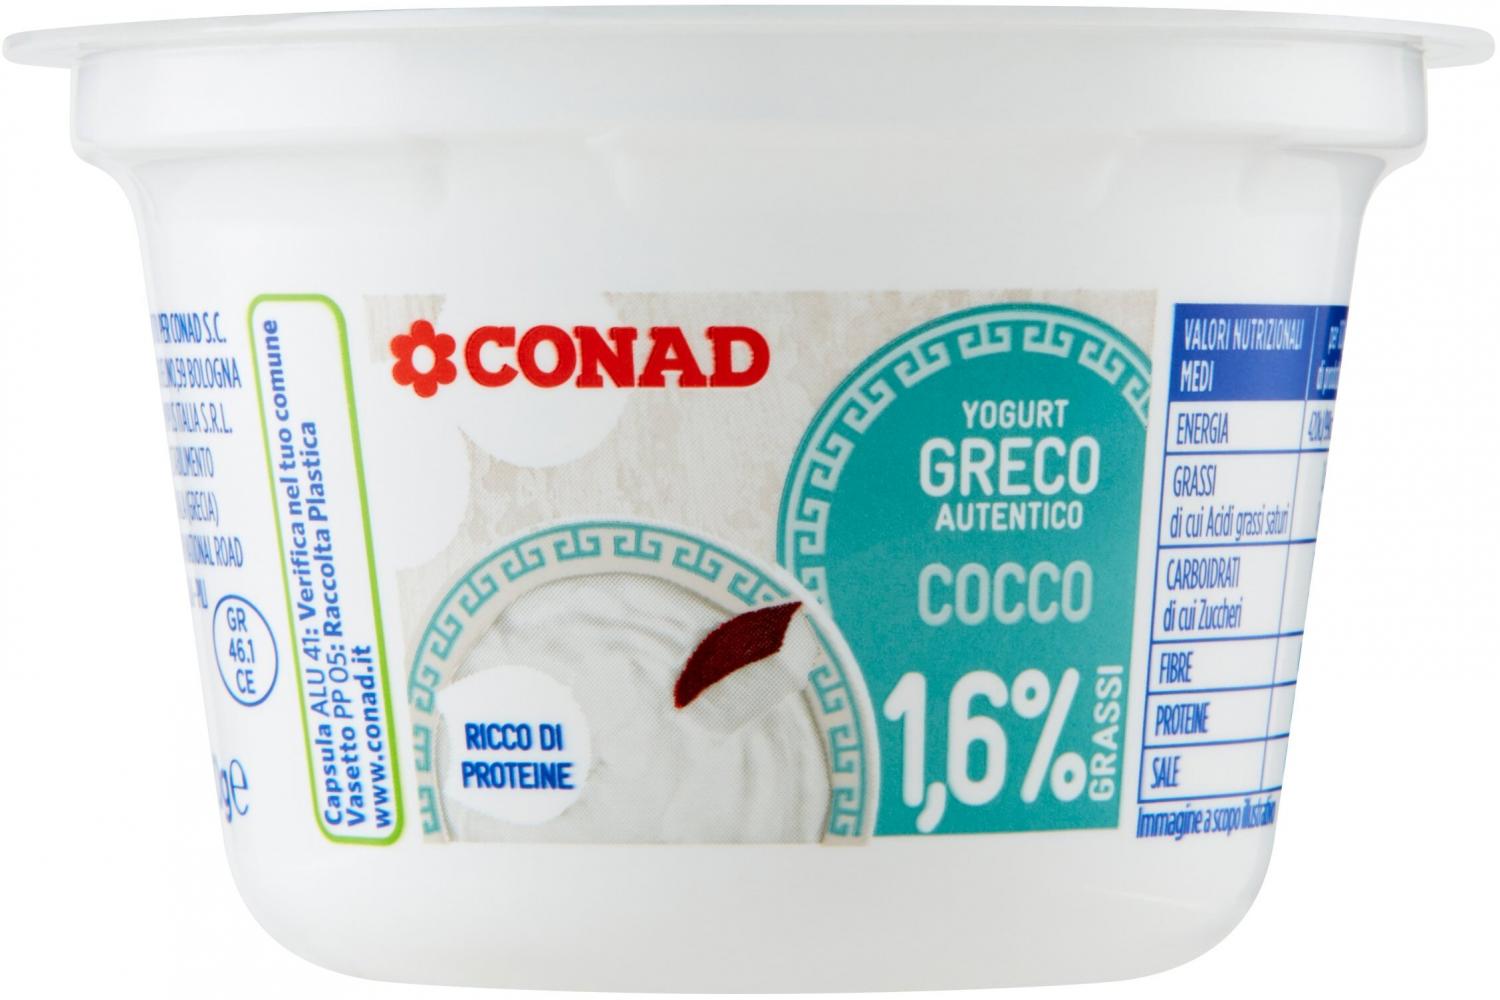 Yogurt Greco 0% Grassi Conad Cocco